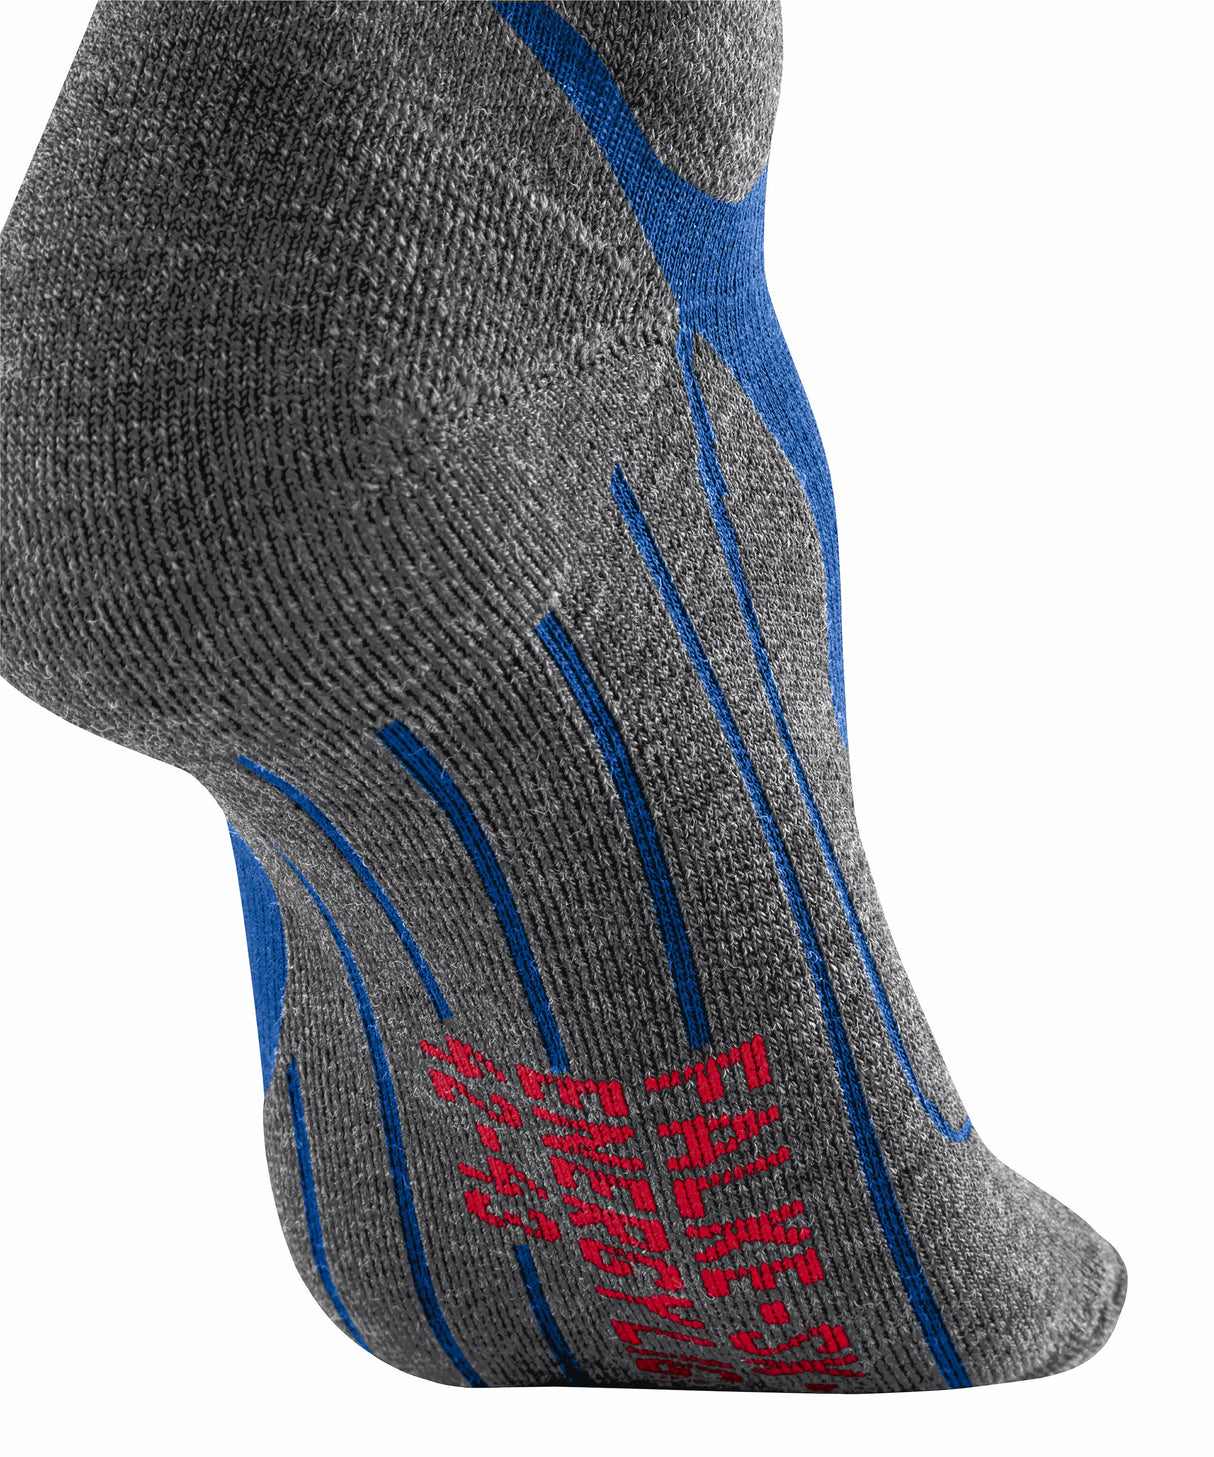 Falke SK4 Energising Men's Ski Socks